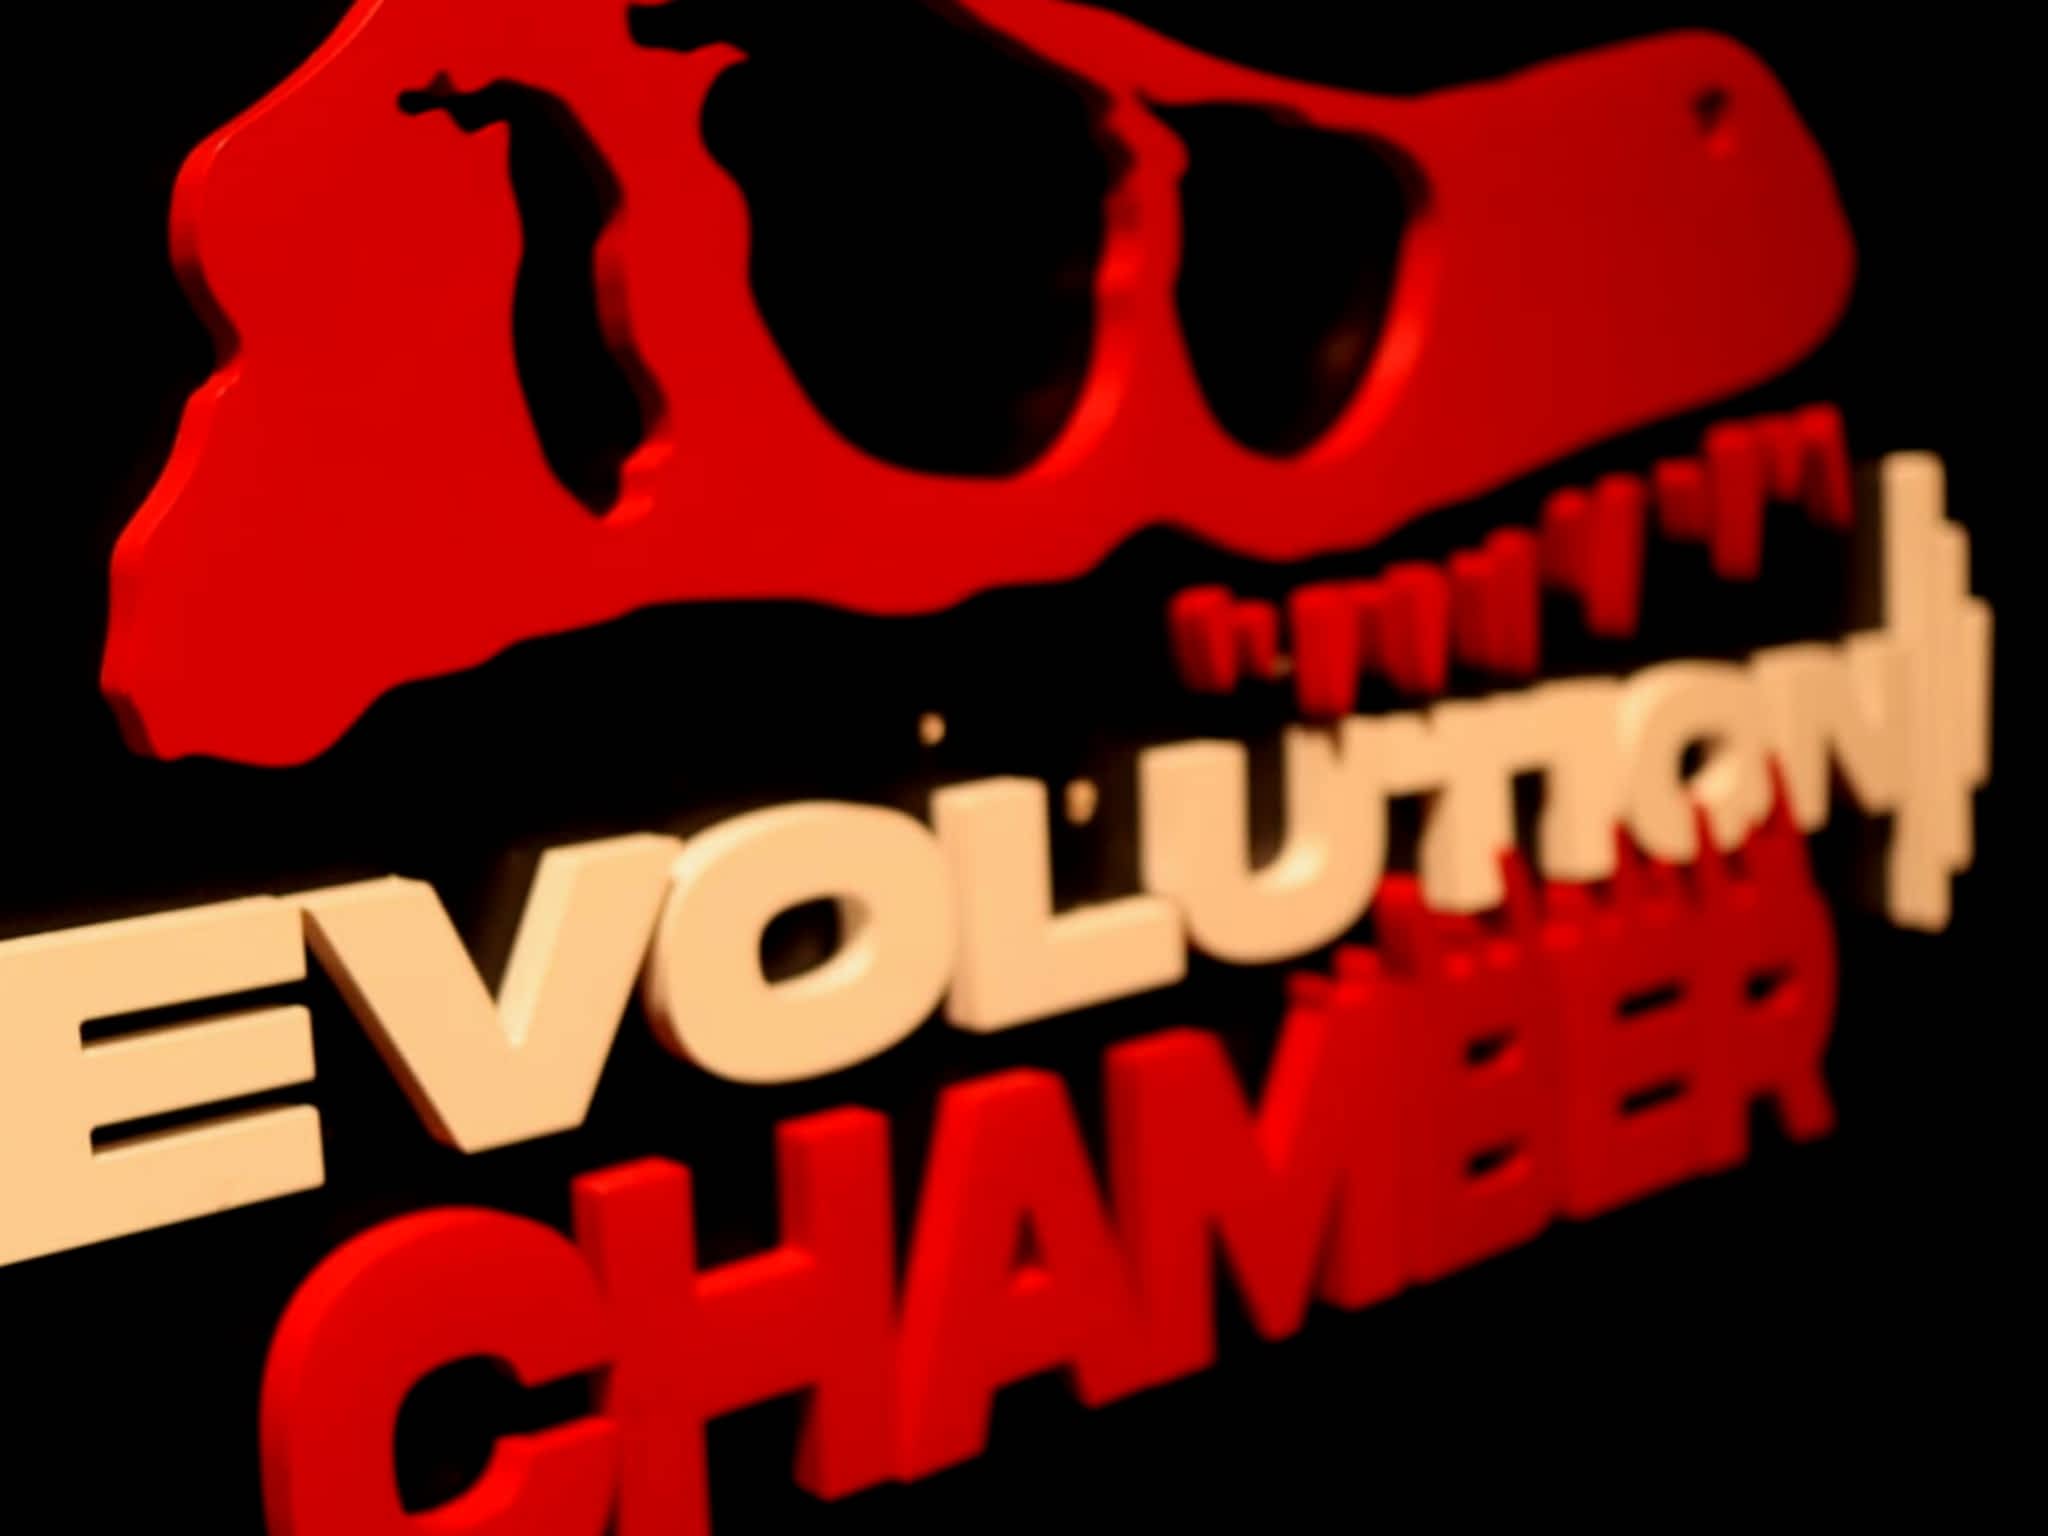 photo Evolution Chamber